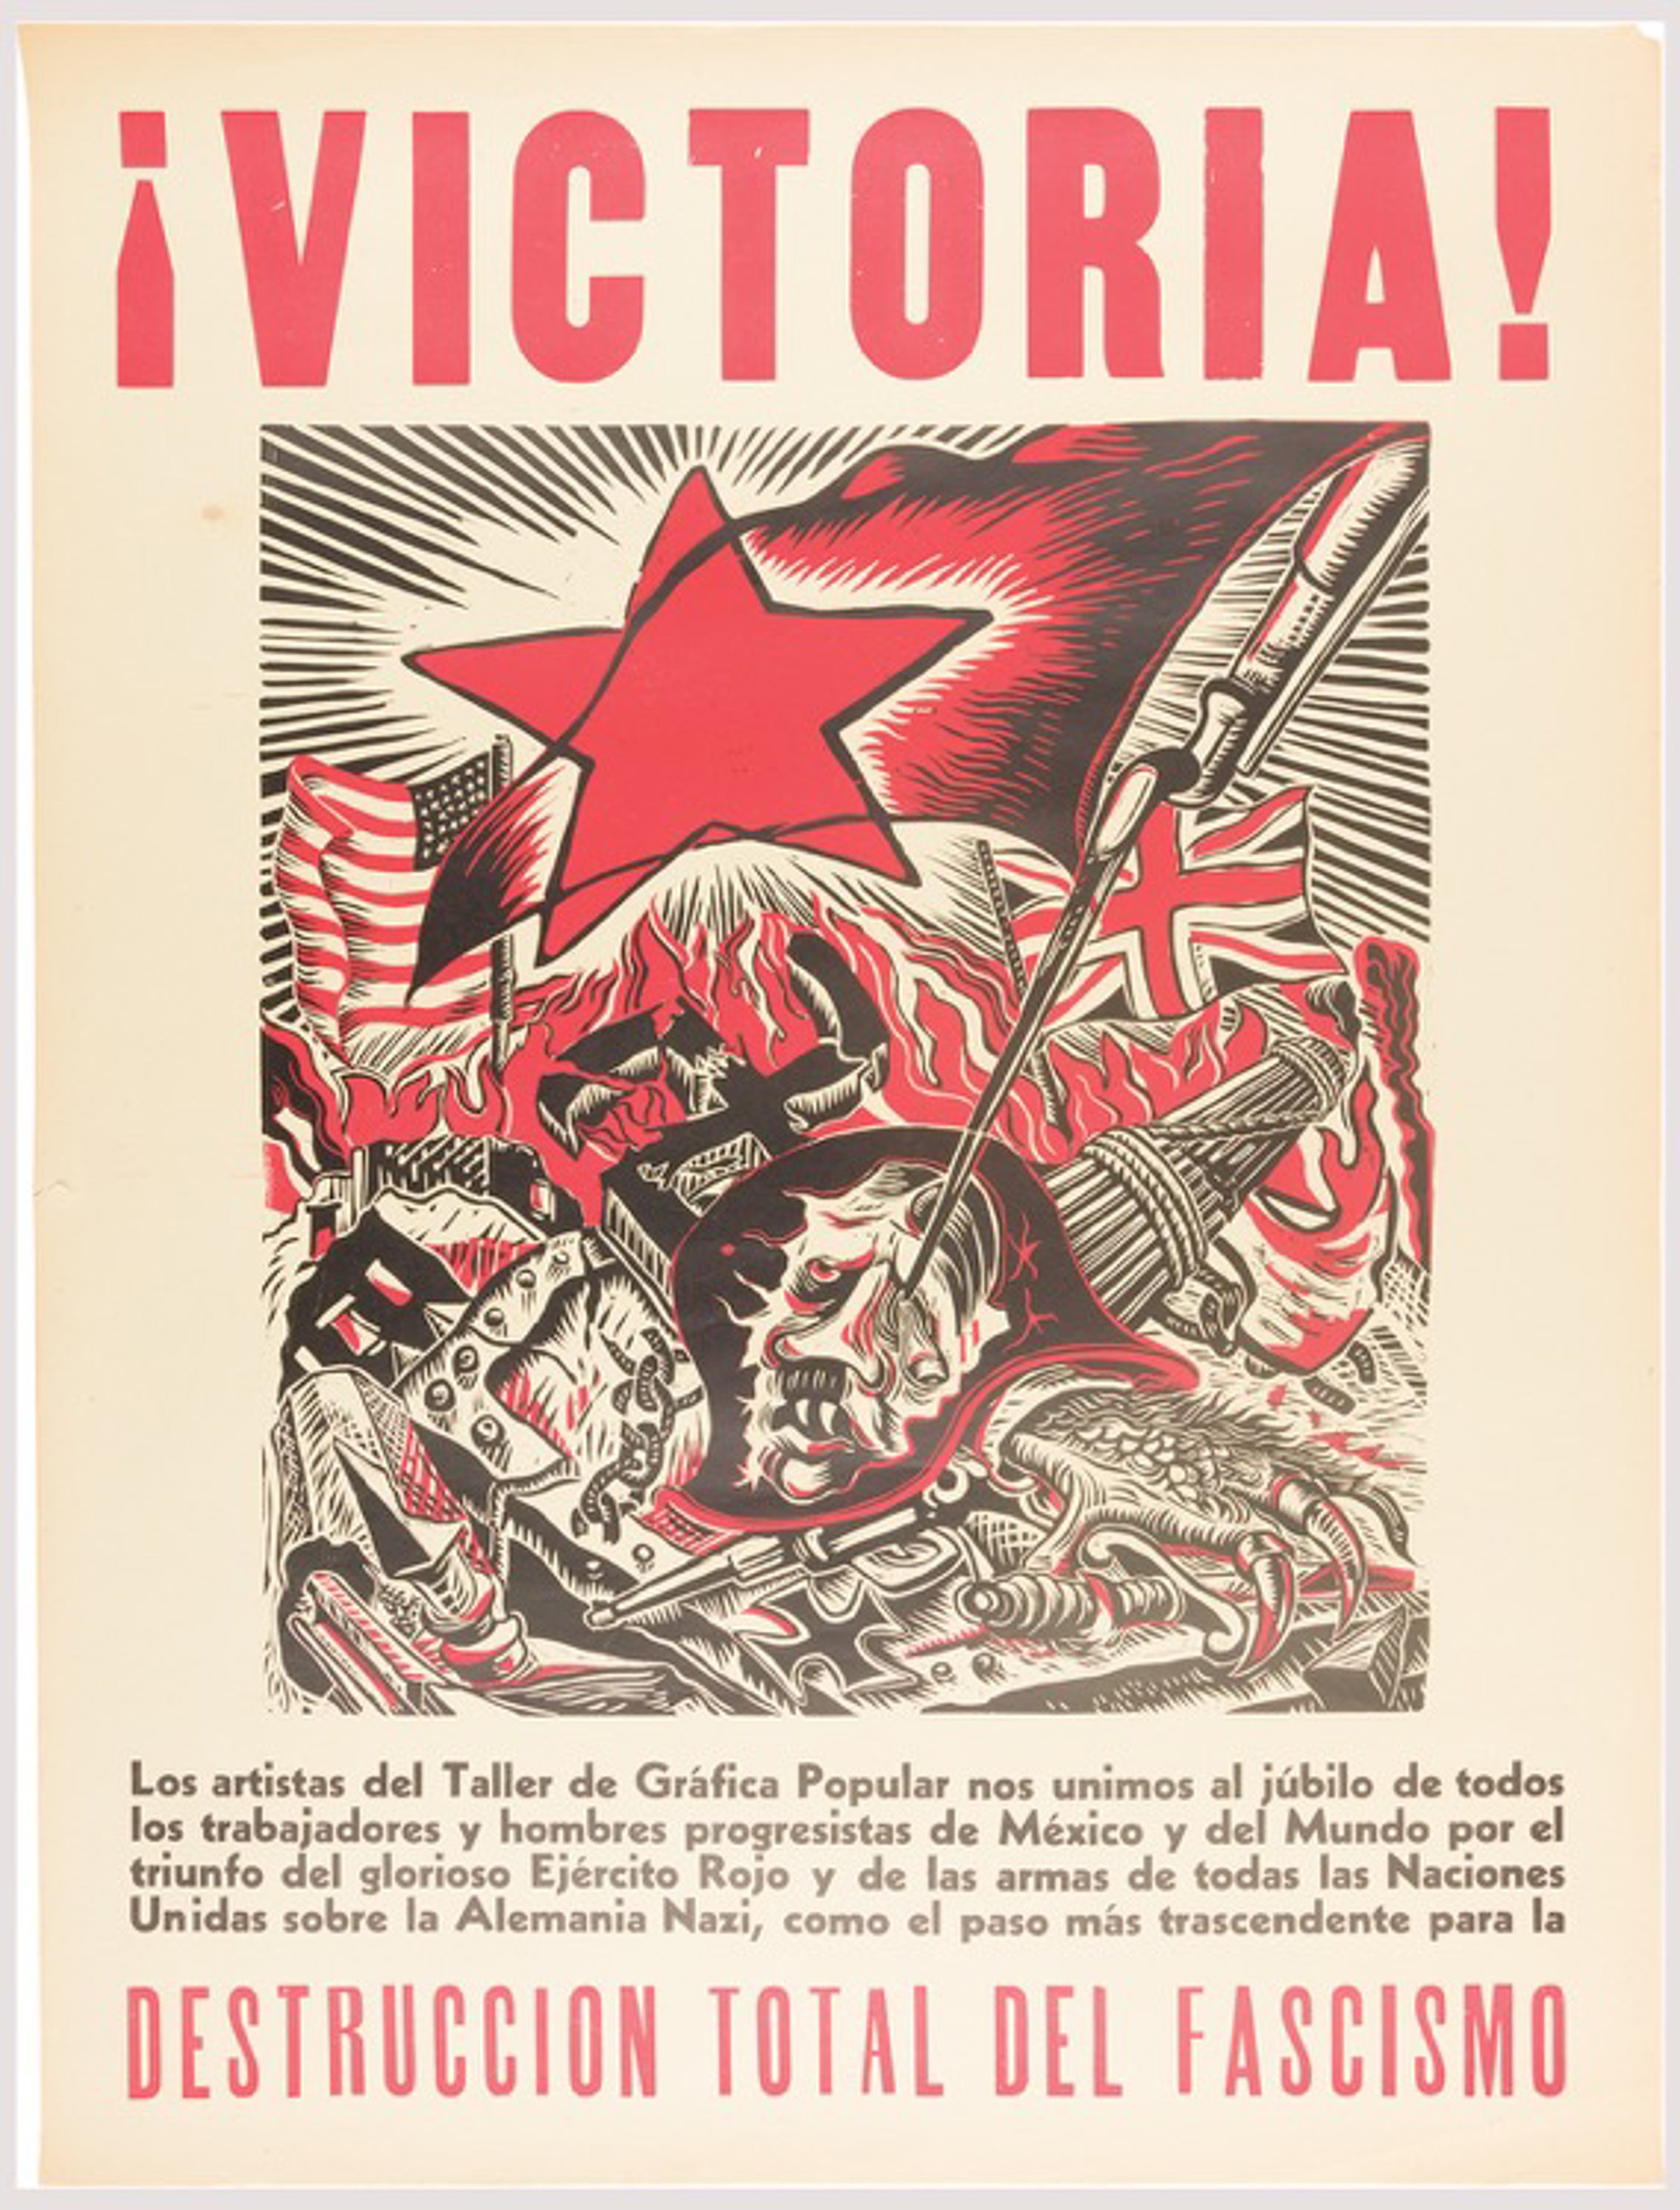 ¡Victoria! ...Destrucción Total del Fascismo (Edition 2) by Ángel Bracho